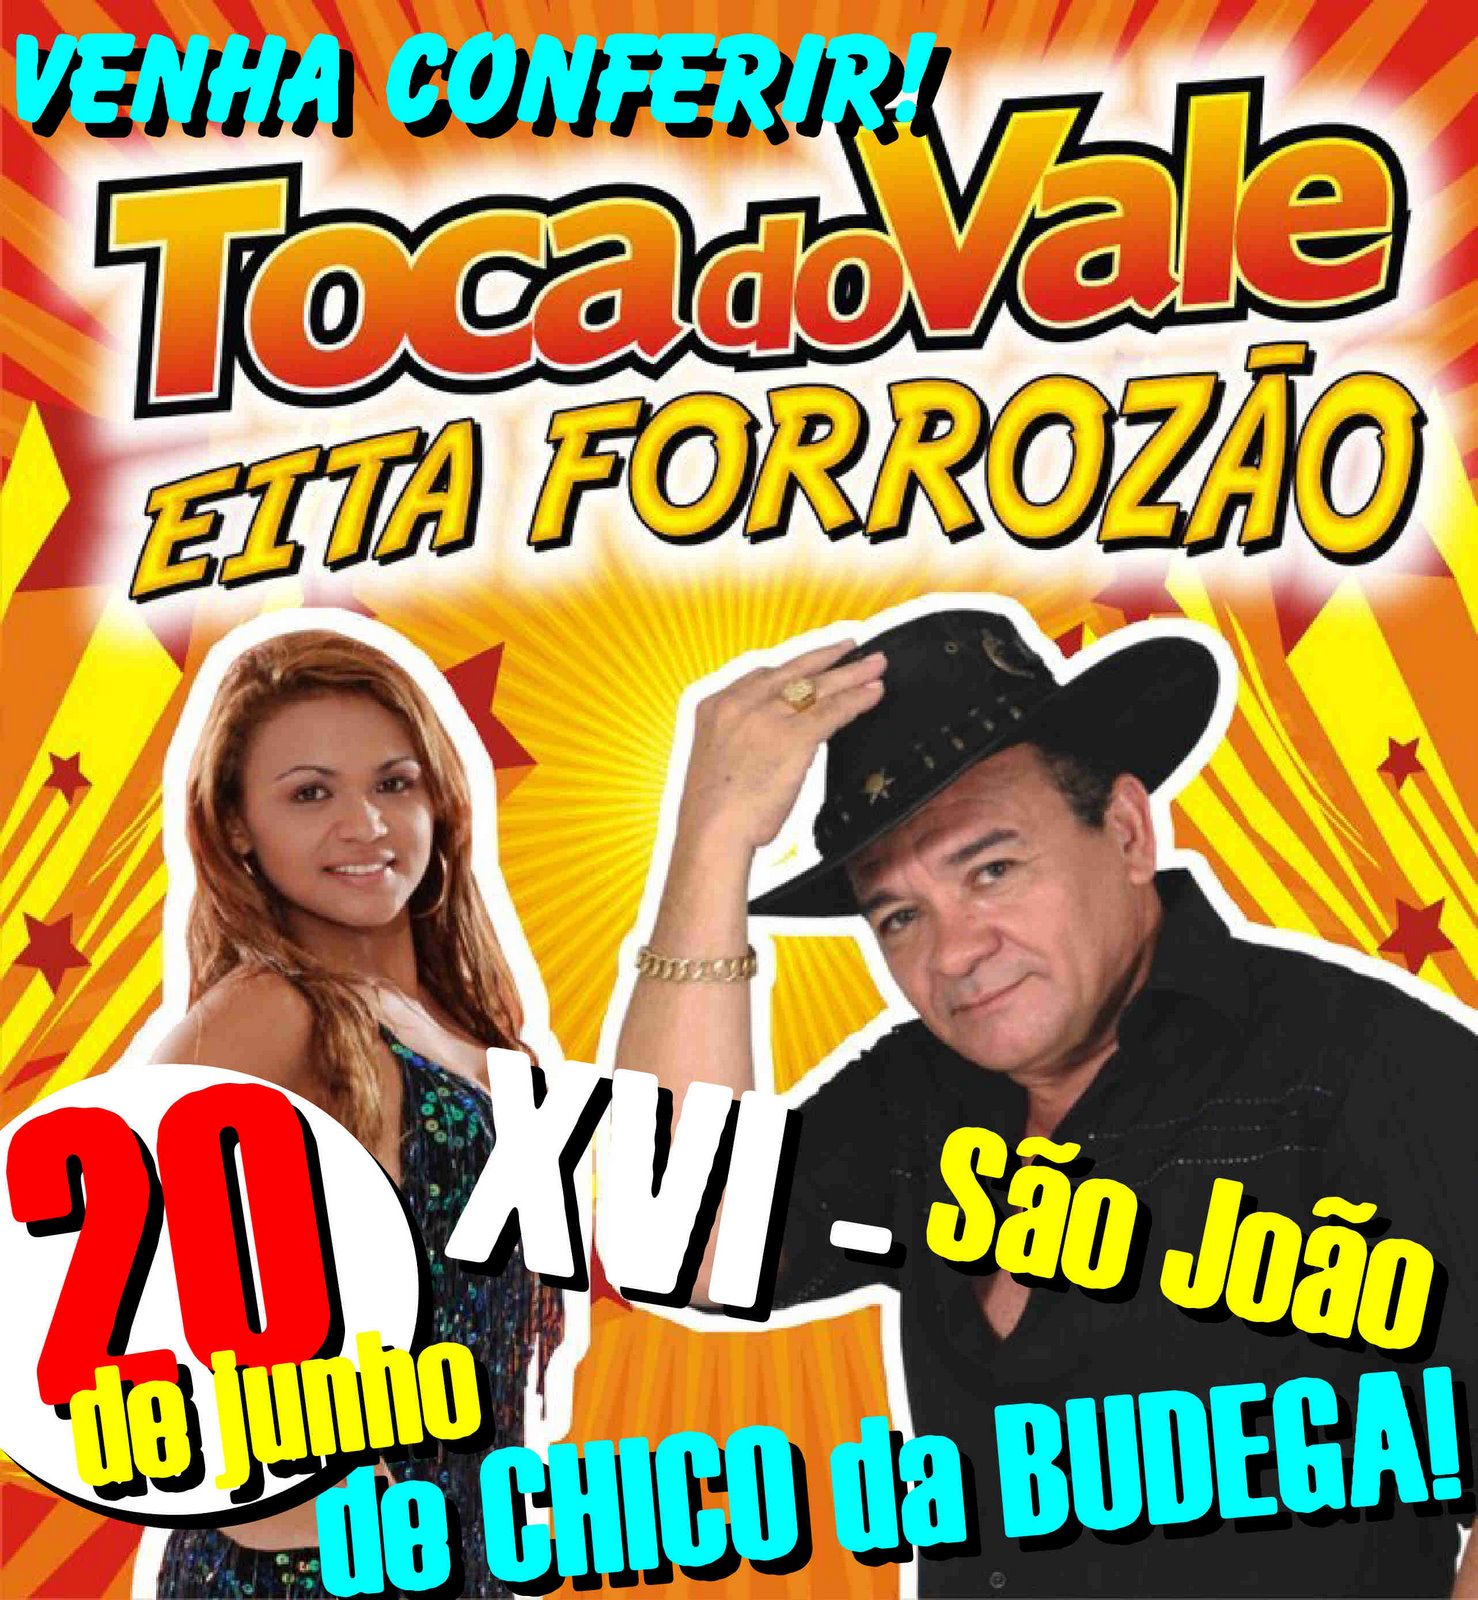 [São+João+de+Chico+da+Budega.jpg]